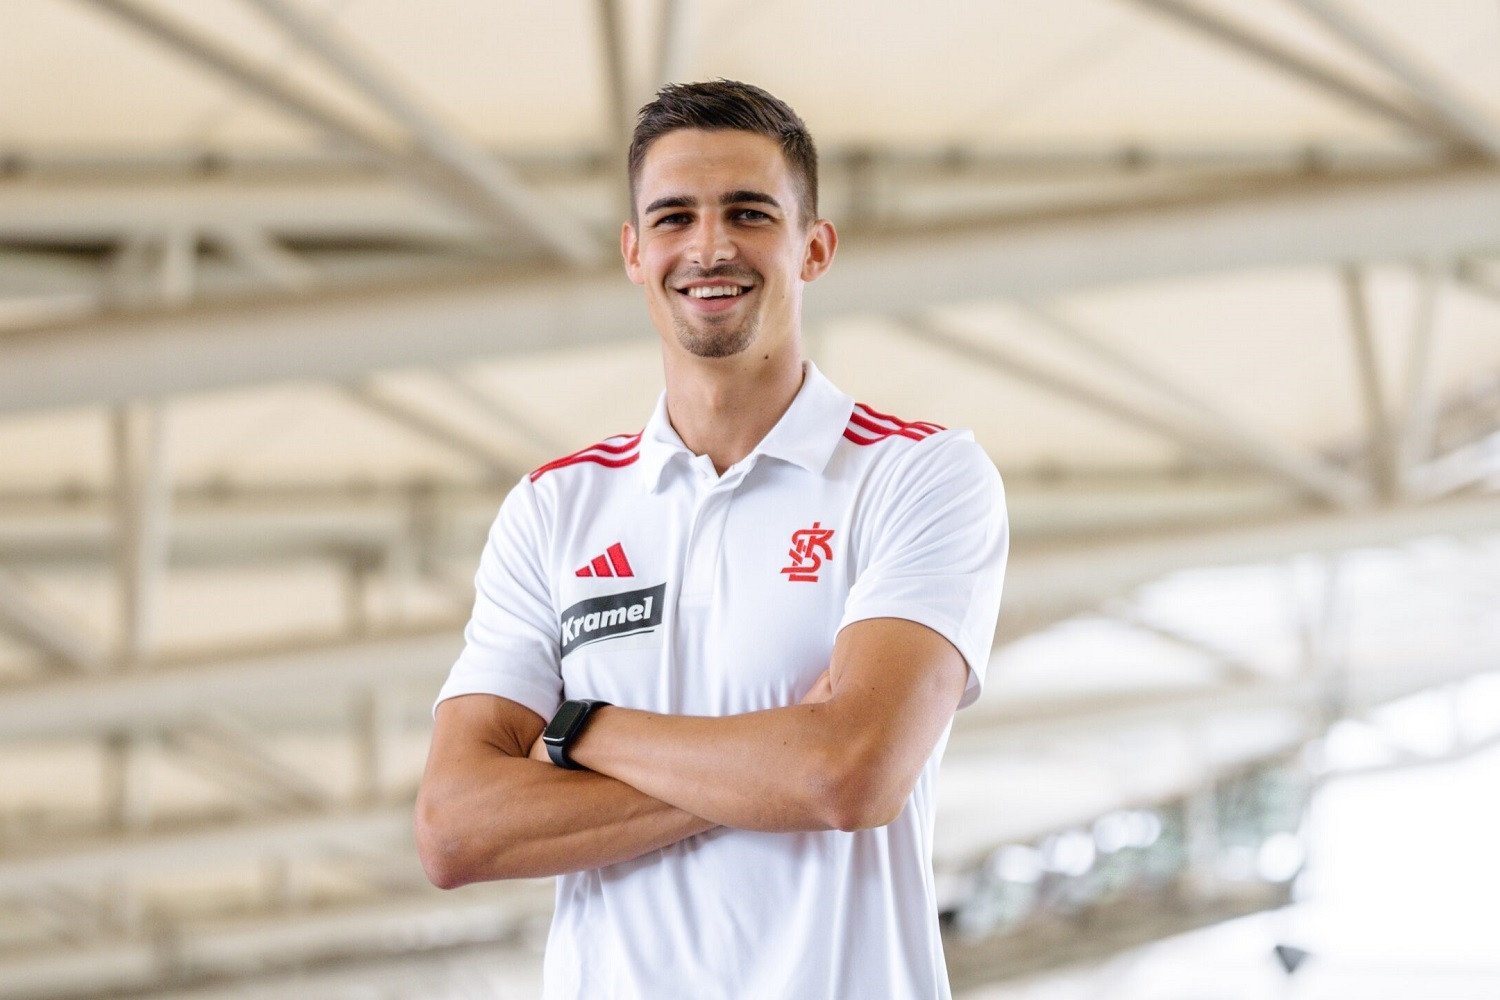 OFICJALNIE: ŁKS Łódź zrealizował transfer numer siedem. Wychowanek Bayernu Monachium